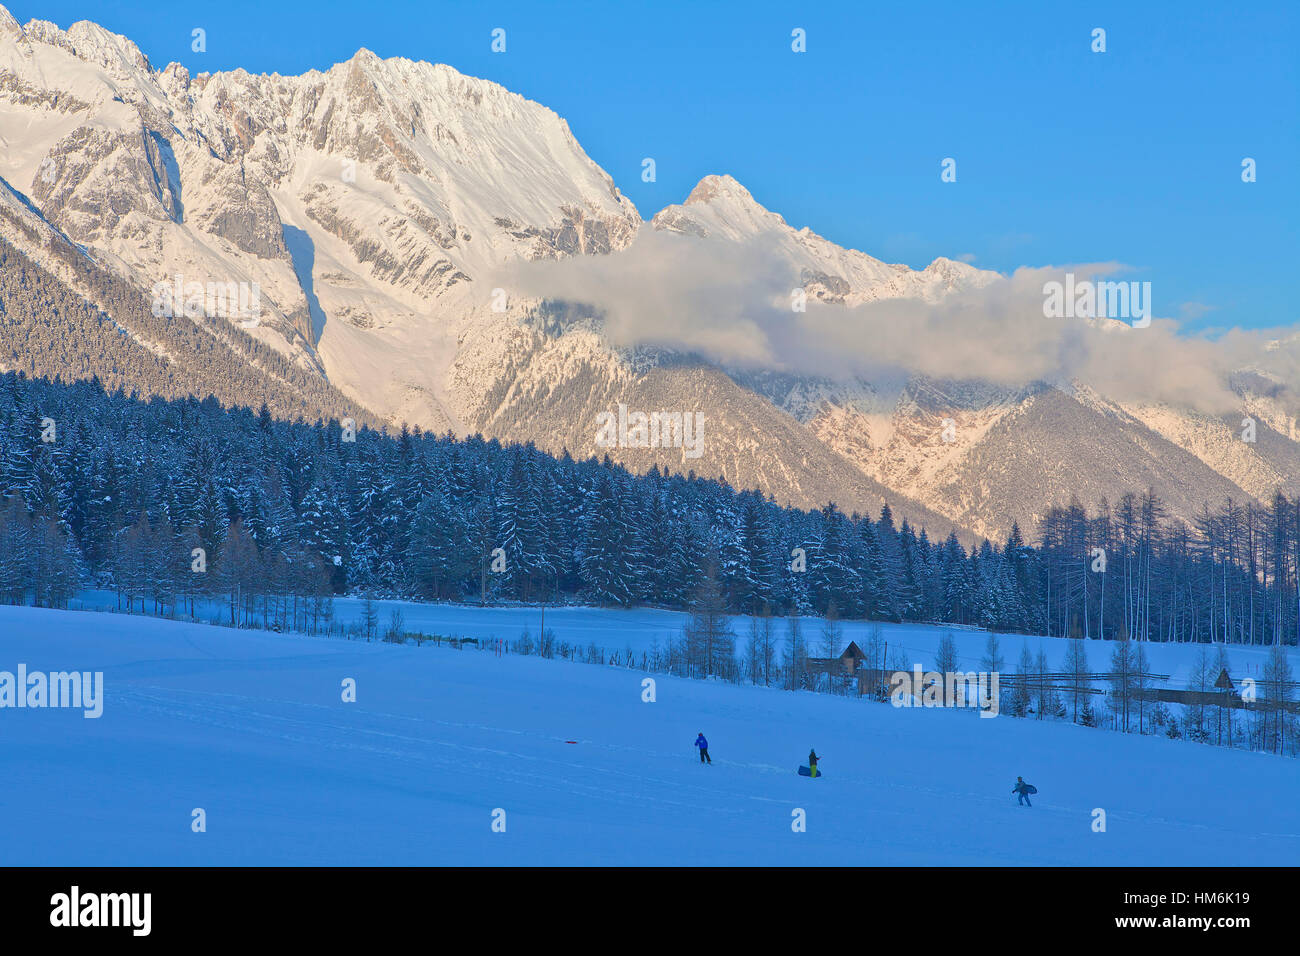 Autriche, Tyrol, Obsteig (village), les enfants jouent dans la neige Banque D'Images